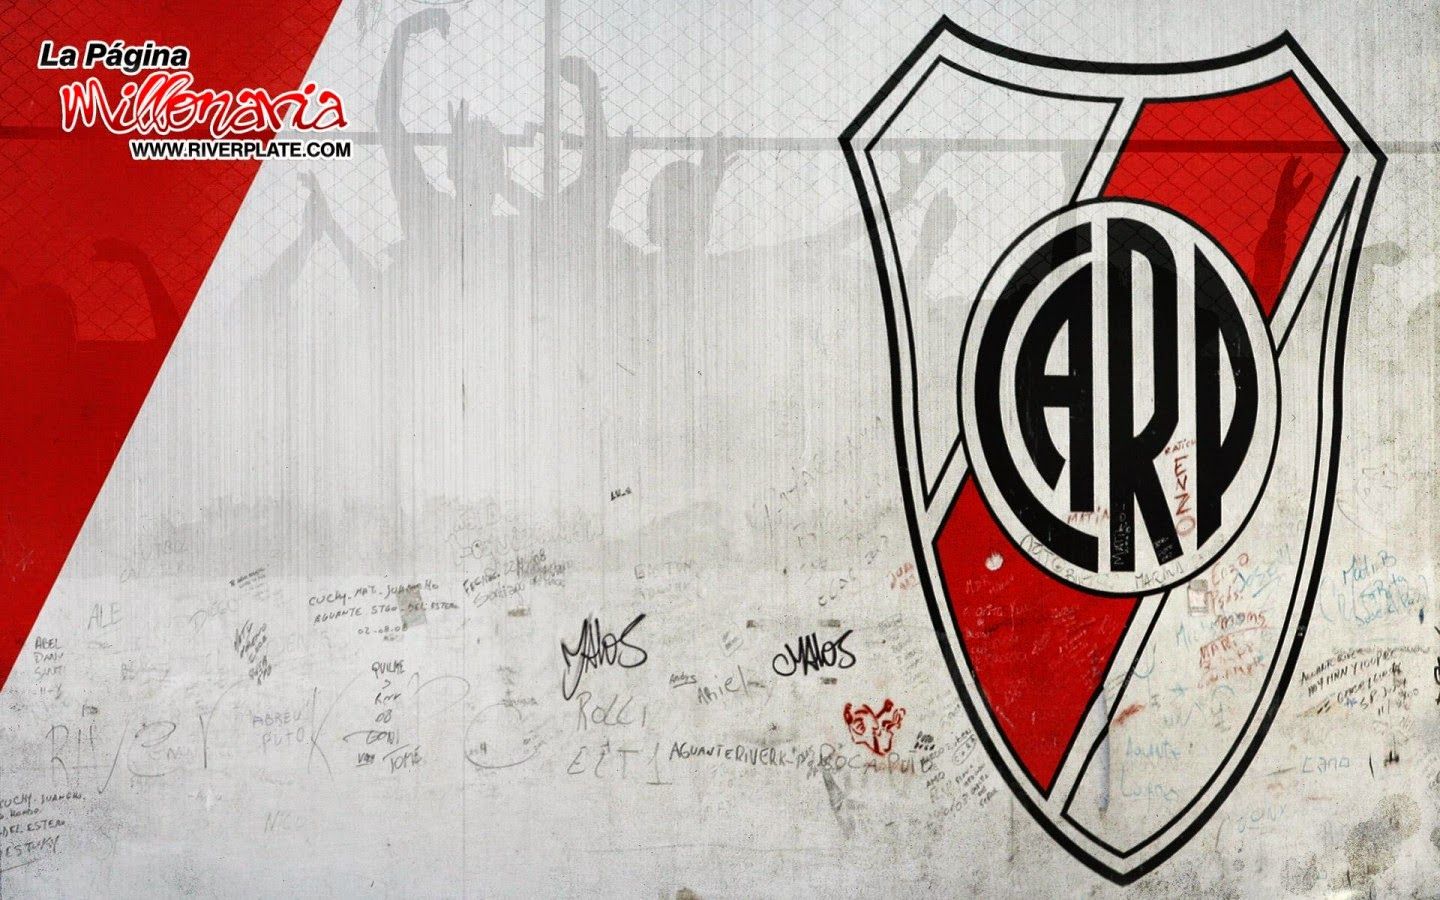 Fondo de pantalla del River Plate 1440x900